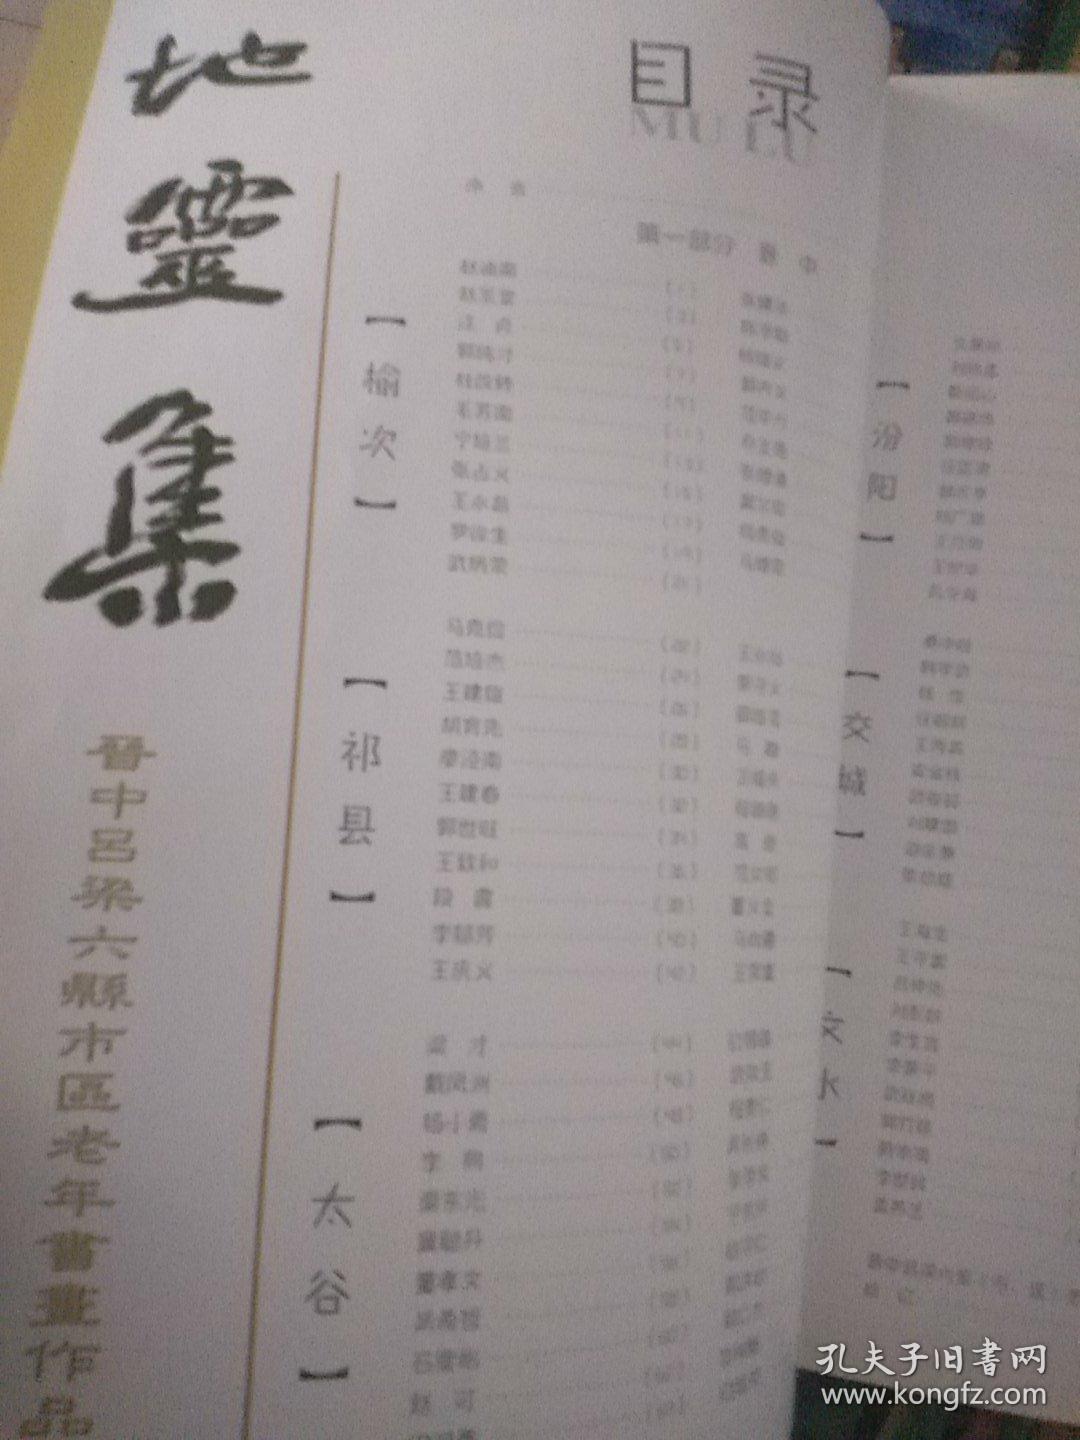 《地灵集》晋中吕梁六县市区老年书画作品集